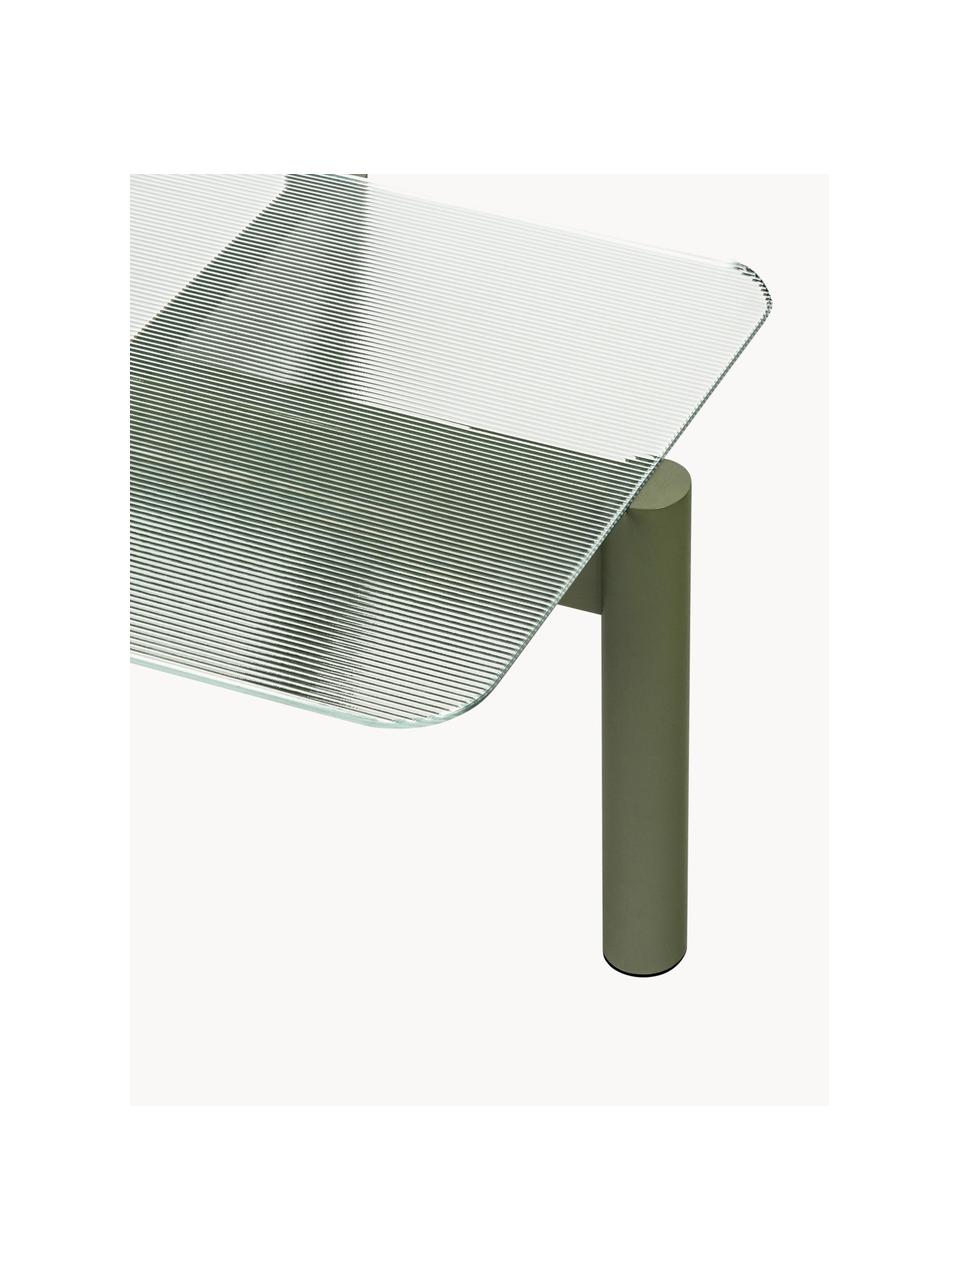 Table basse en hêtre avec plateau en verre Kob, Transparent, vert olive, larg. 110 x prof. 55 cm